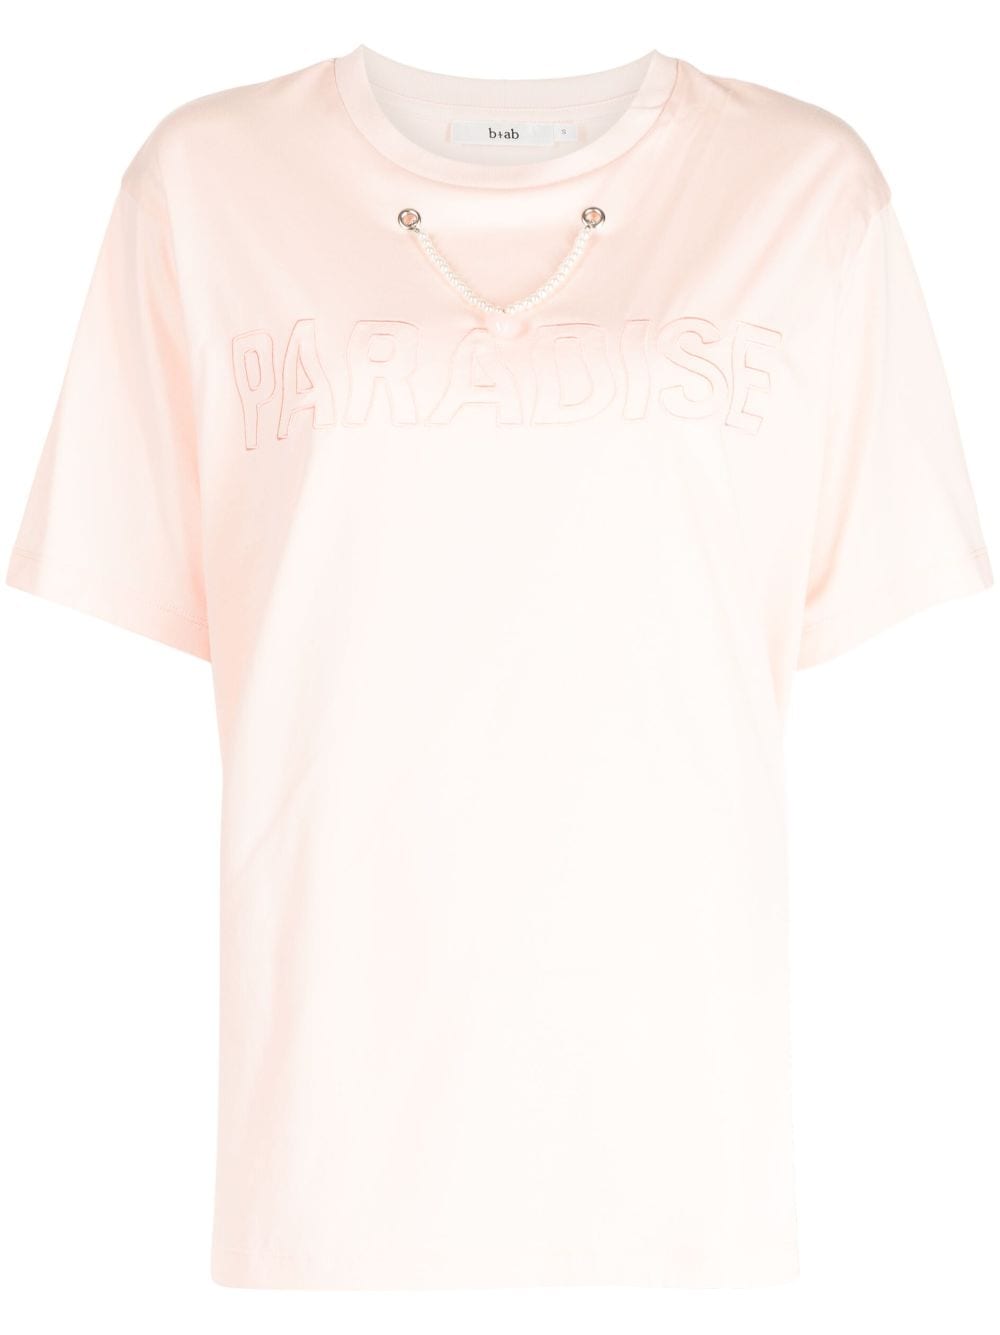 b+ab chain-detail cotton T-shirt - Pink von b+ab